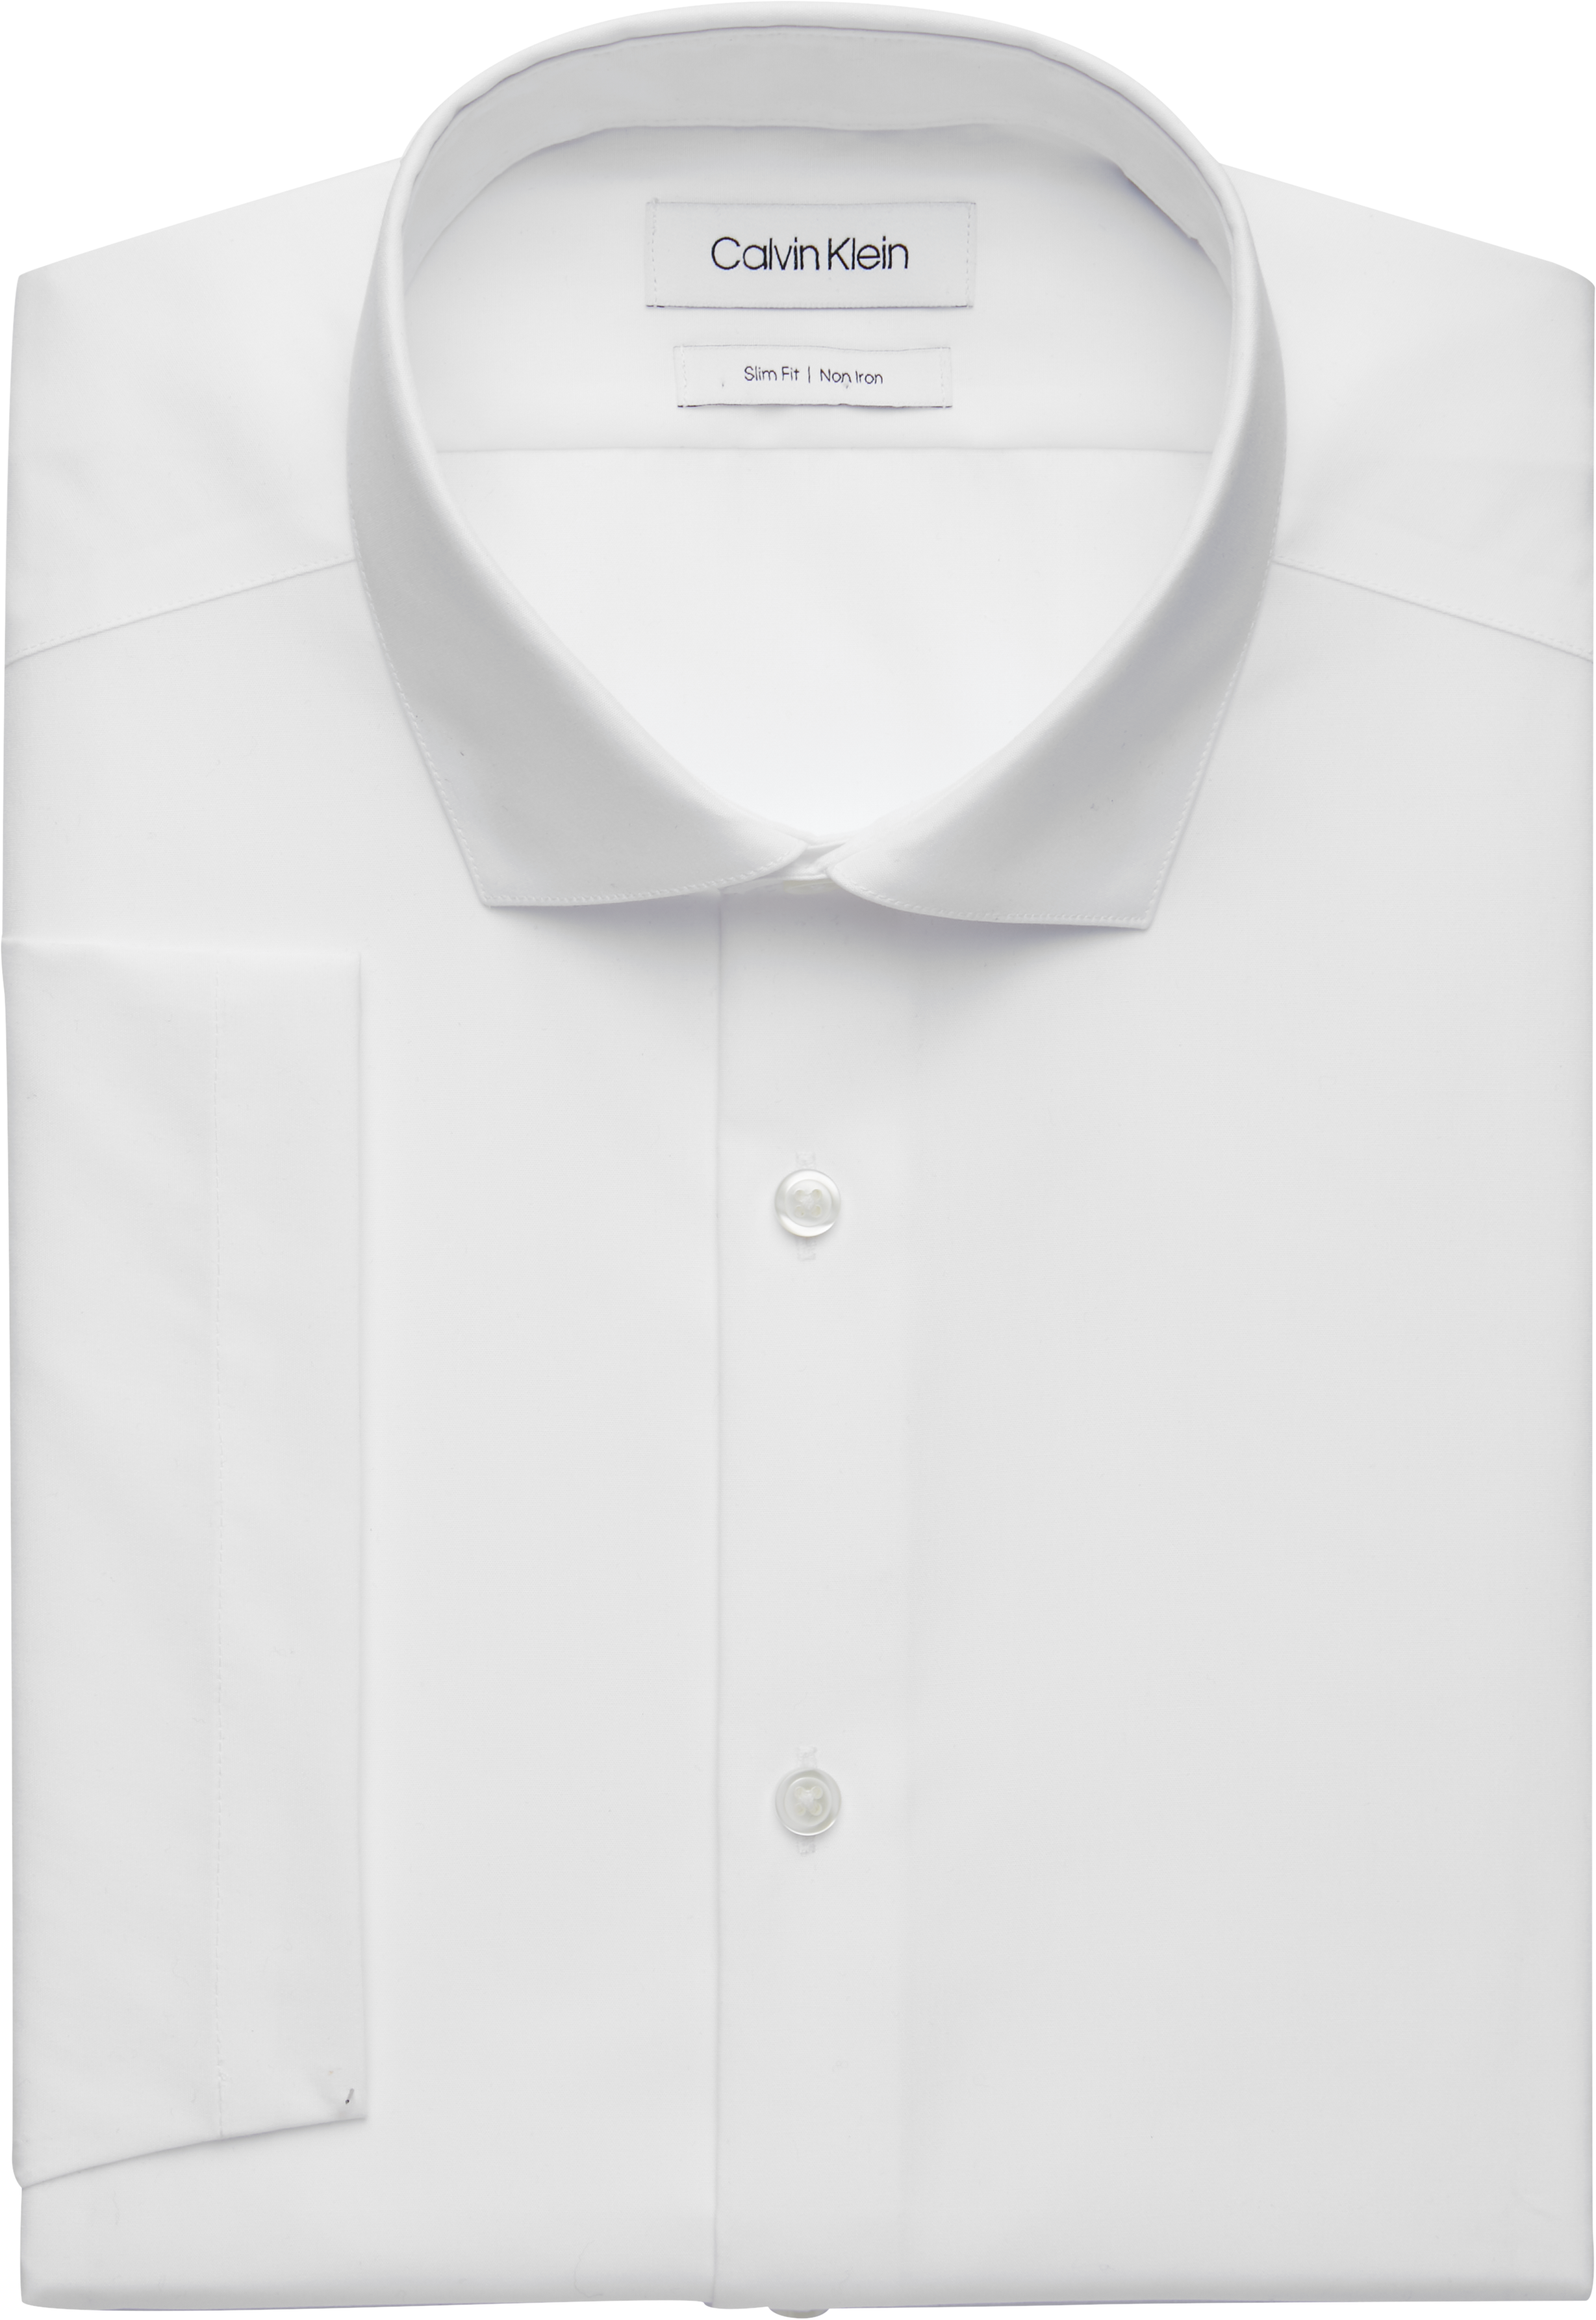 Calvin Klein White Slim Fit Short Sleeve Dress Shirt - Men's Sale | Men ...